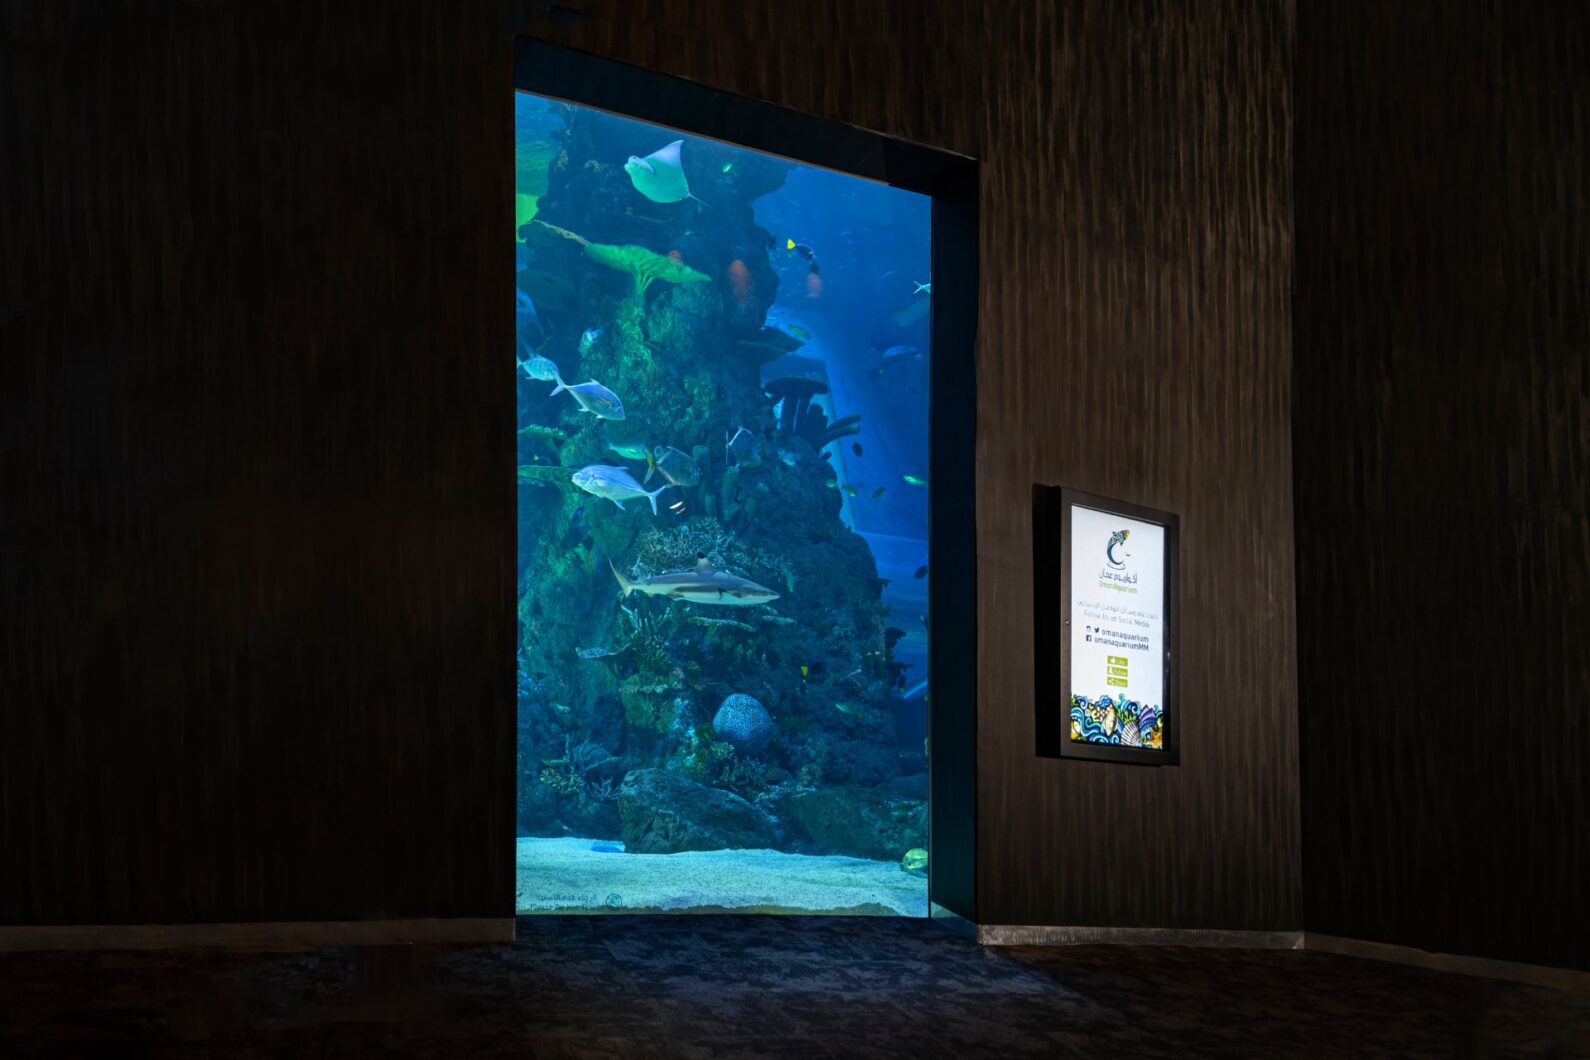 tubarão-aquário-orphek-led-light-amazonas-960